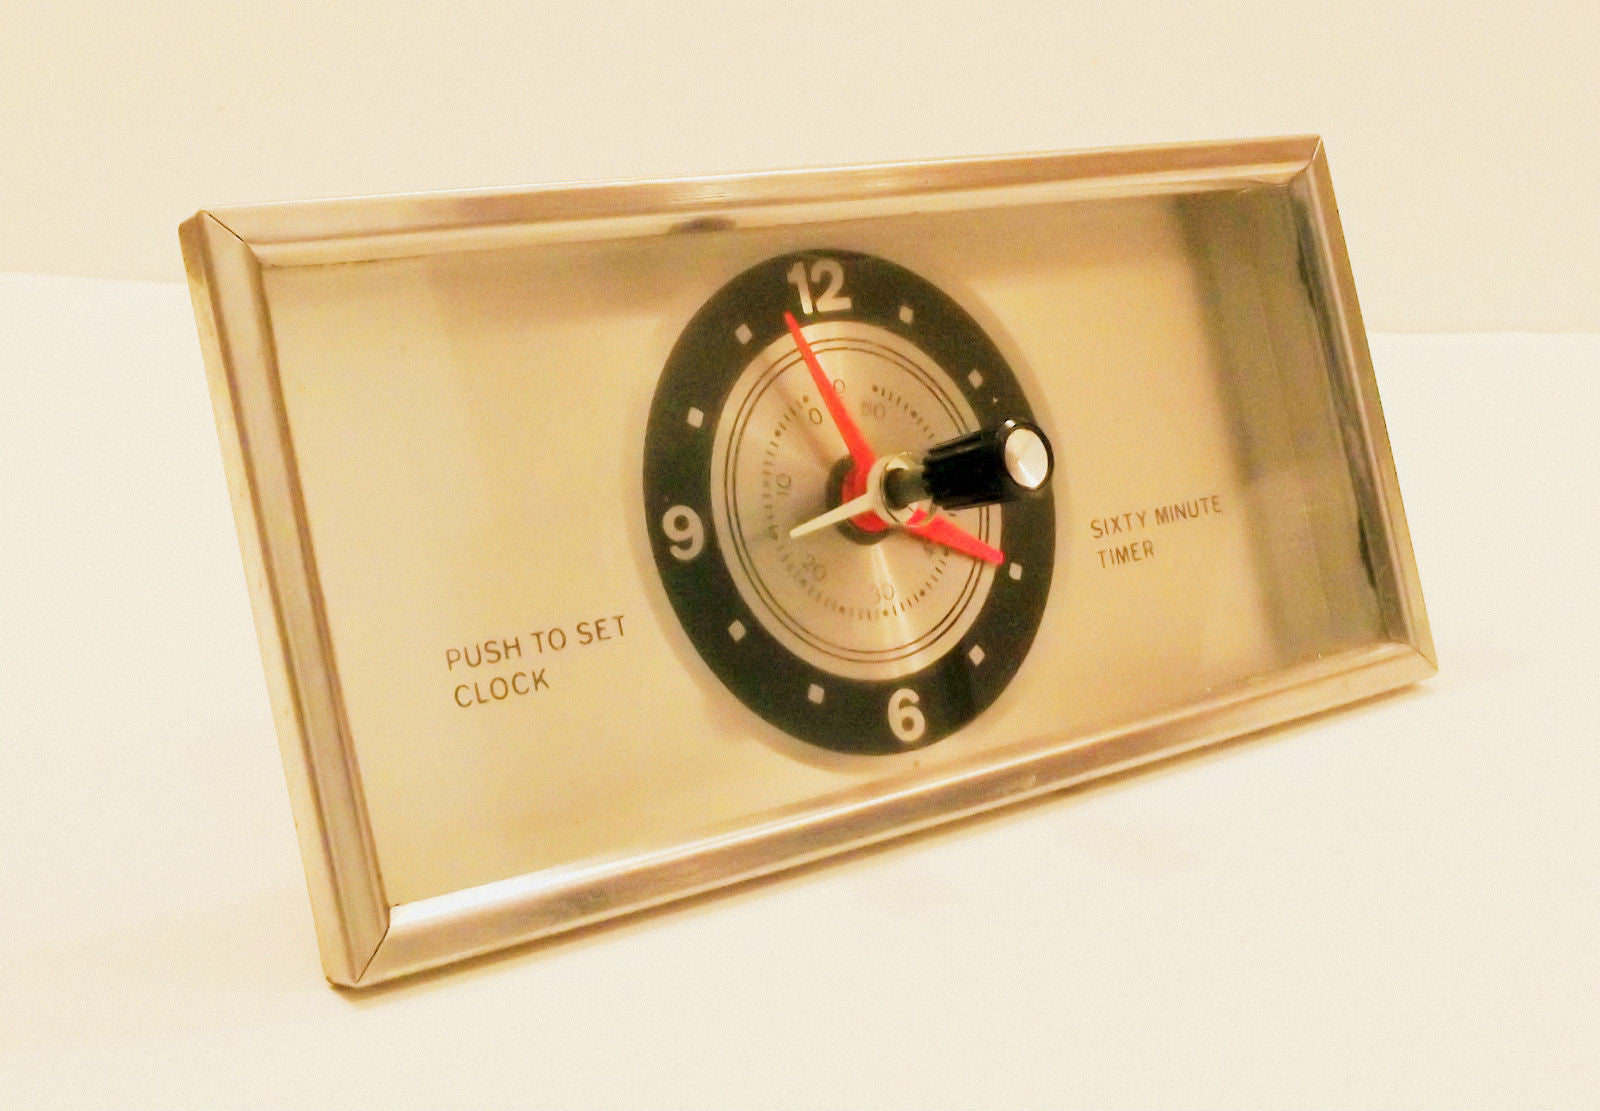 Oven Clock Timer Part # 3ast23a253a1